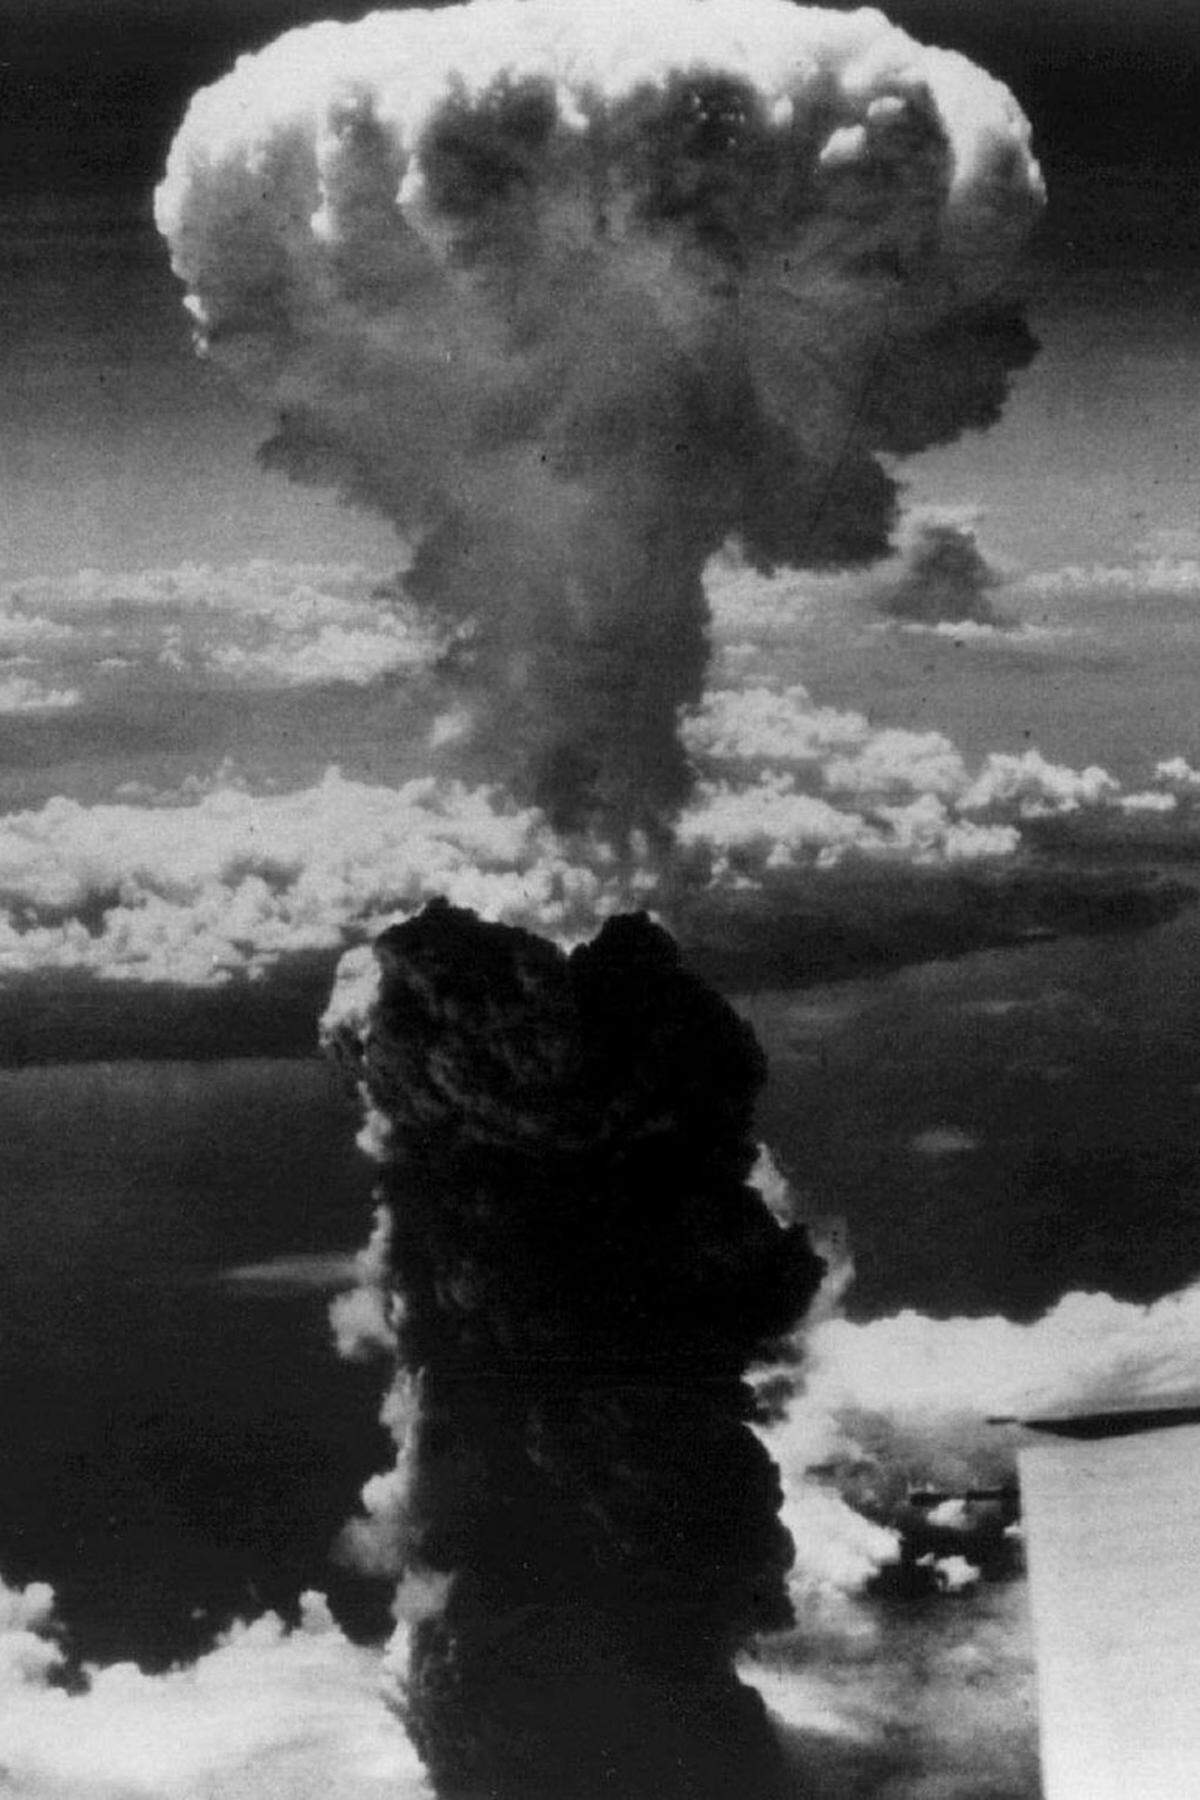 Drei Tage später holen die USA zum nächsten Nuklearschlag aus: "Fat Man", der mit 22.000 Tonnen TNT deutlich mehr Sprengkraft hat als "Little Boy'', zündet über der japanischen Stadt Nagasaki. 75.000 Menschen werden in den Tod gerissen.